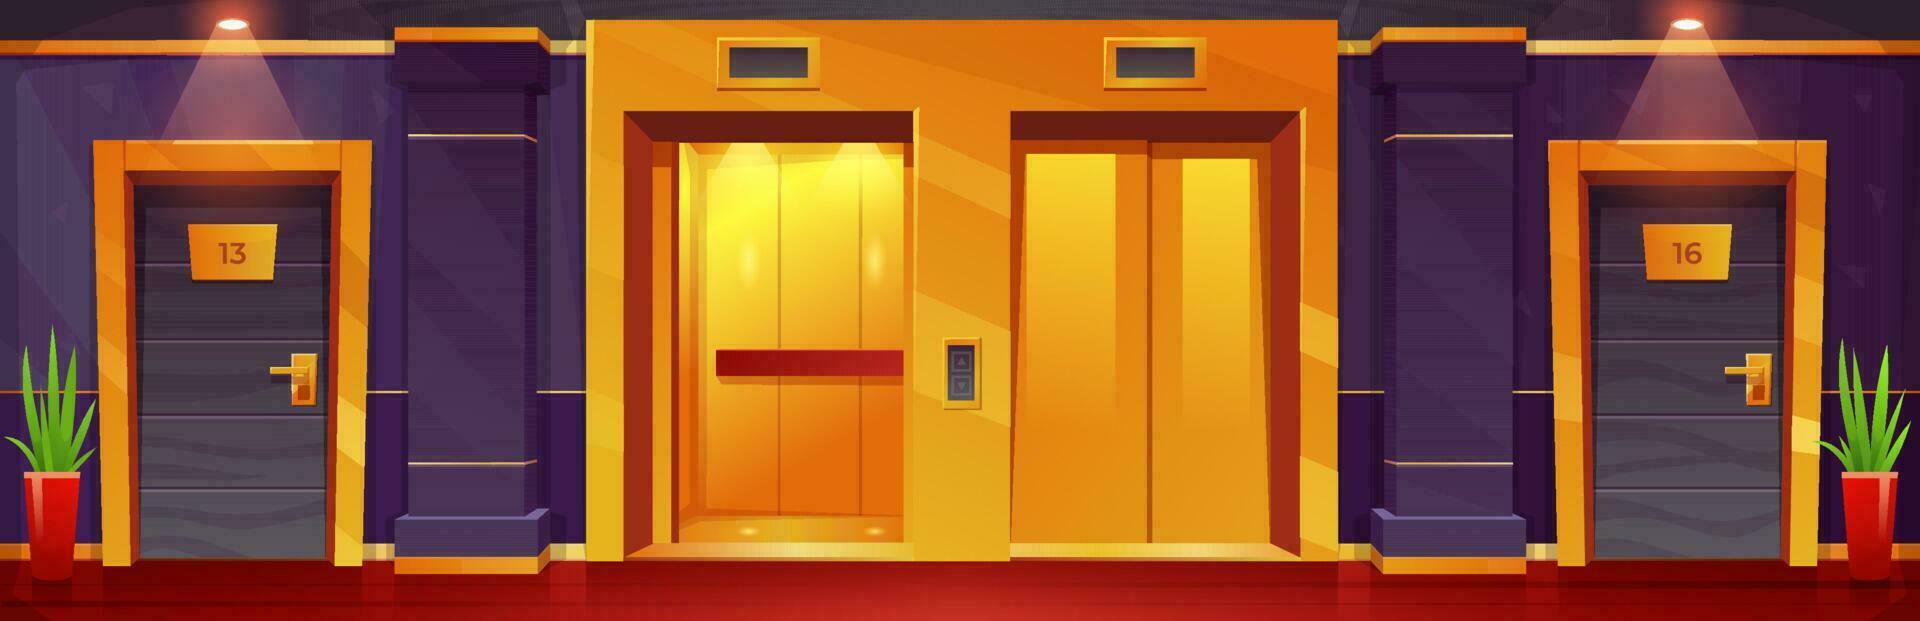 dibujos animados lujo hotel piso con dorado ascensores vector